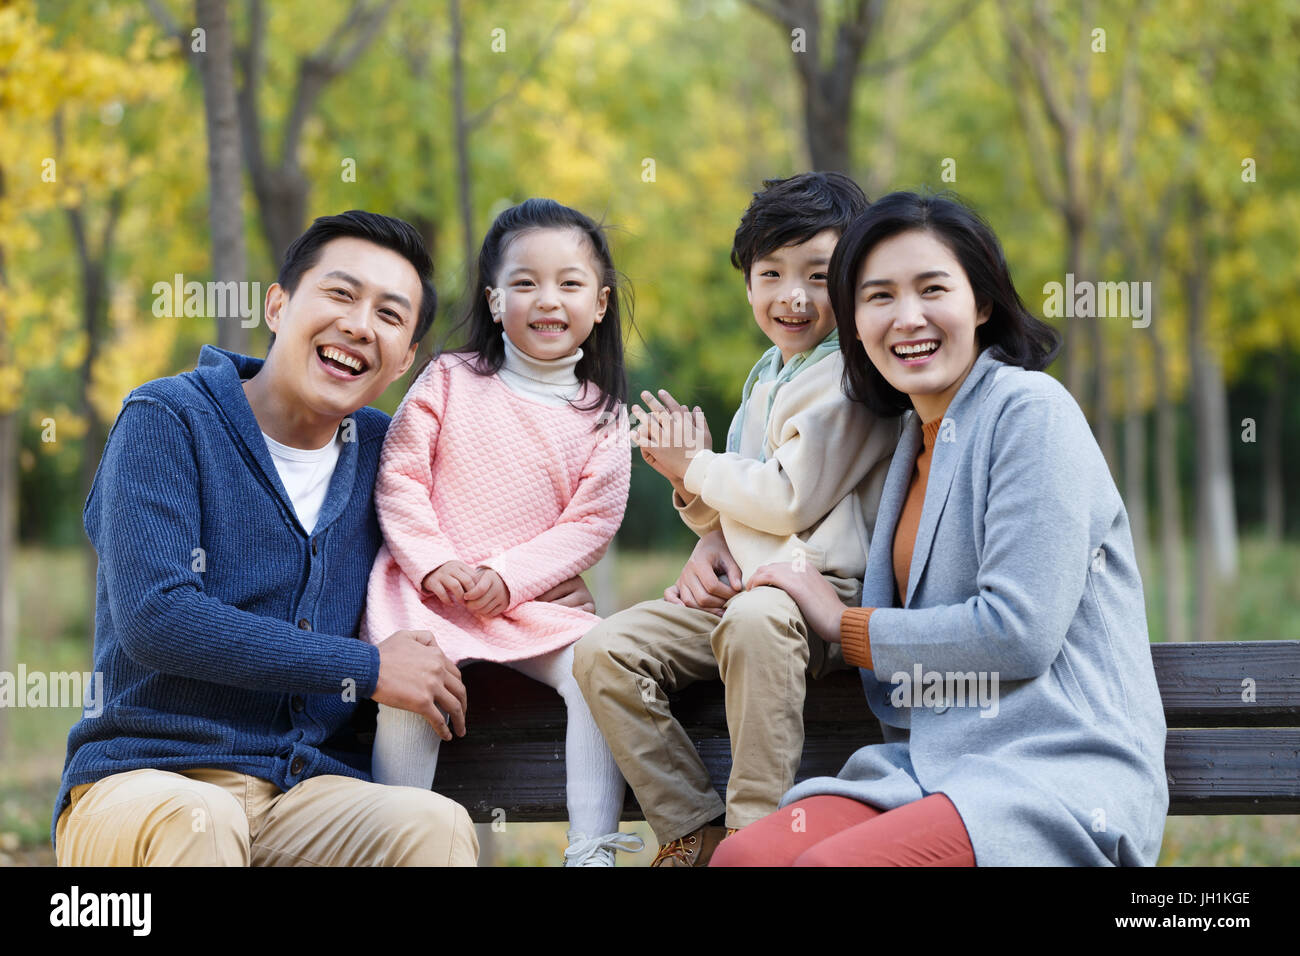 Portrait of happy family Stock Photo